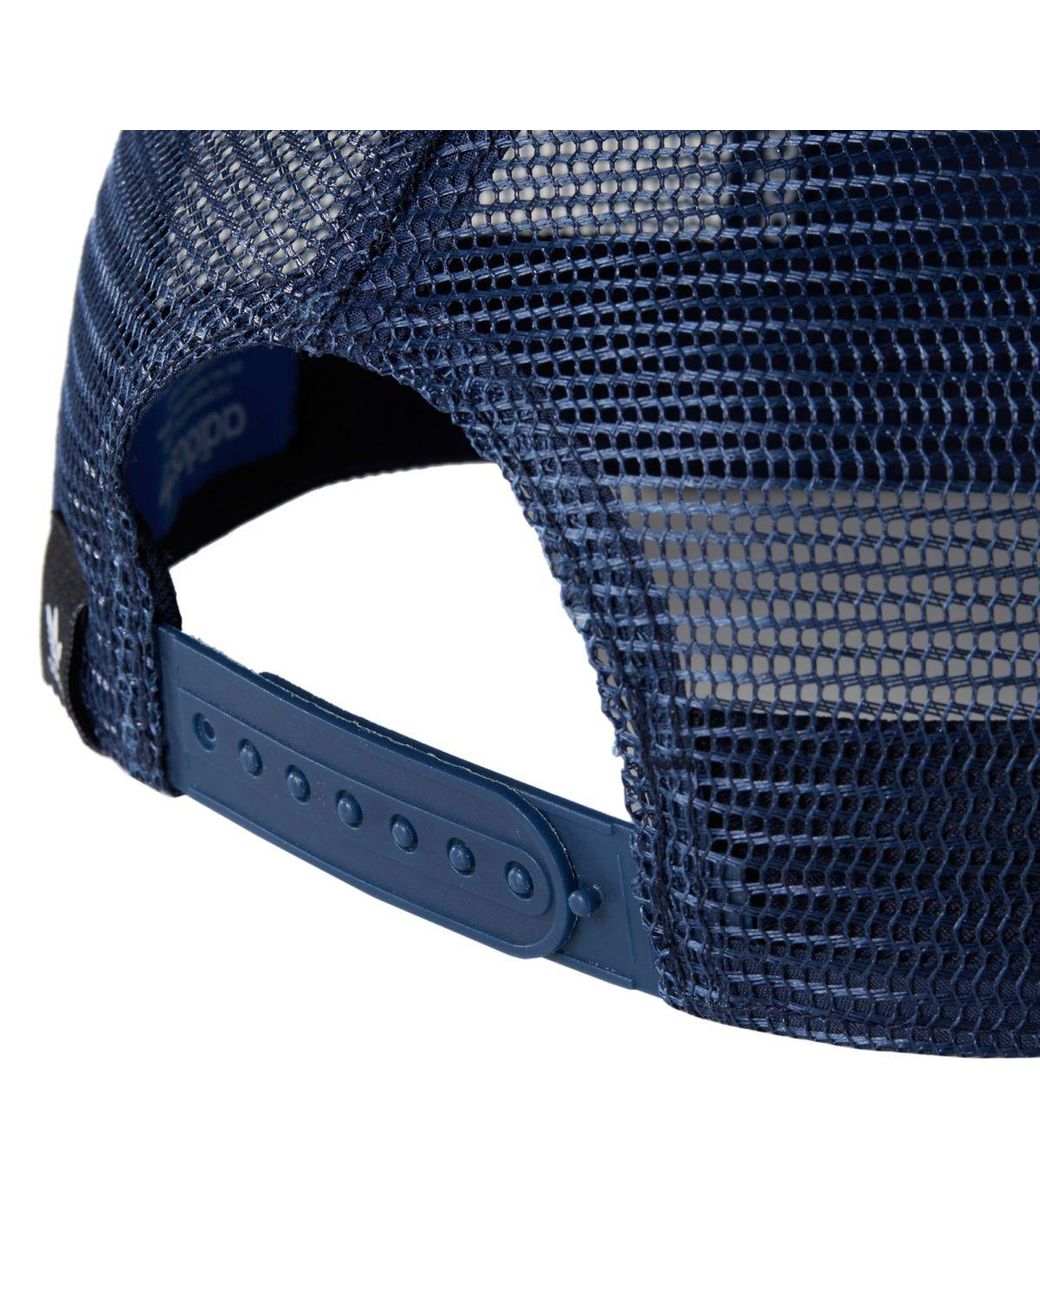 adidas Synthetic Trefoil Trucker Hat in Blue for Men | Lyst